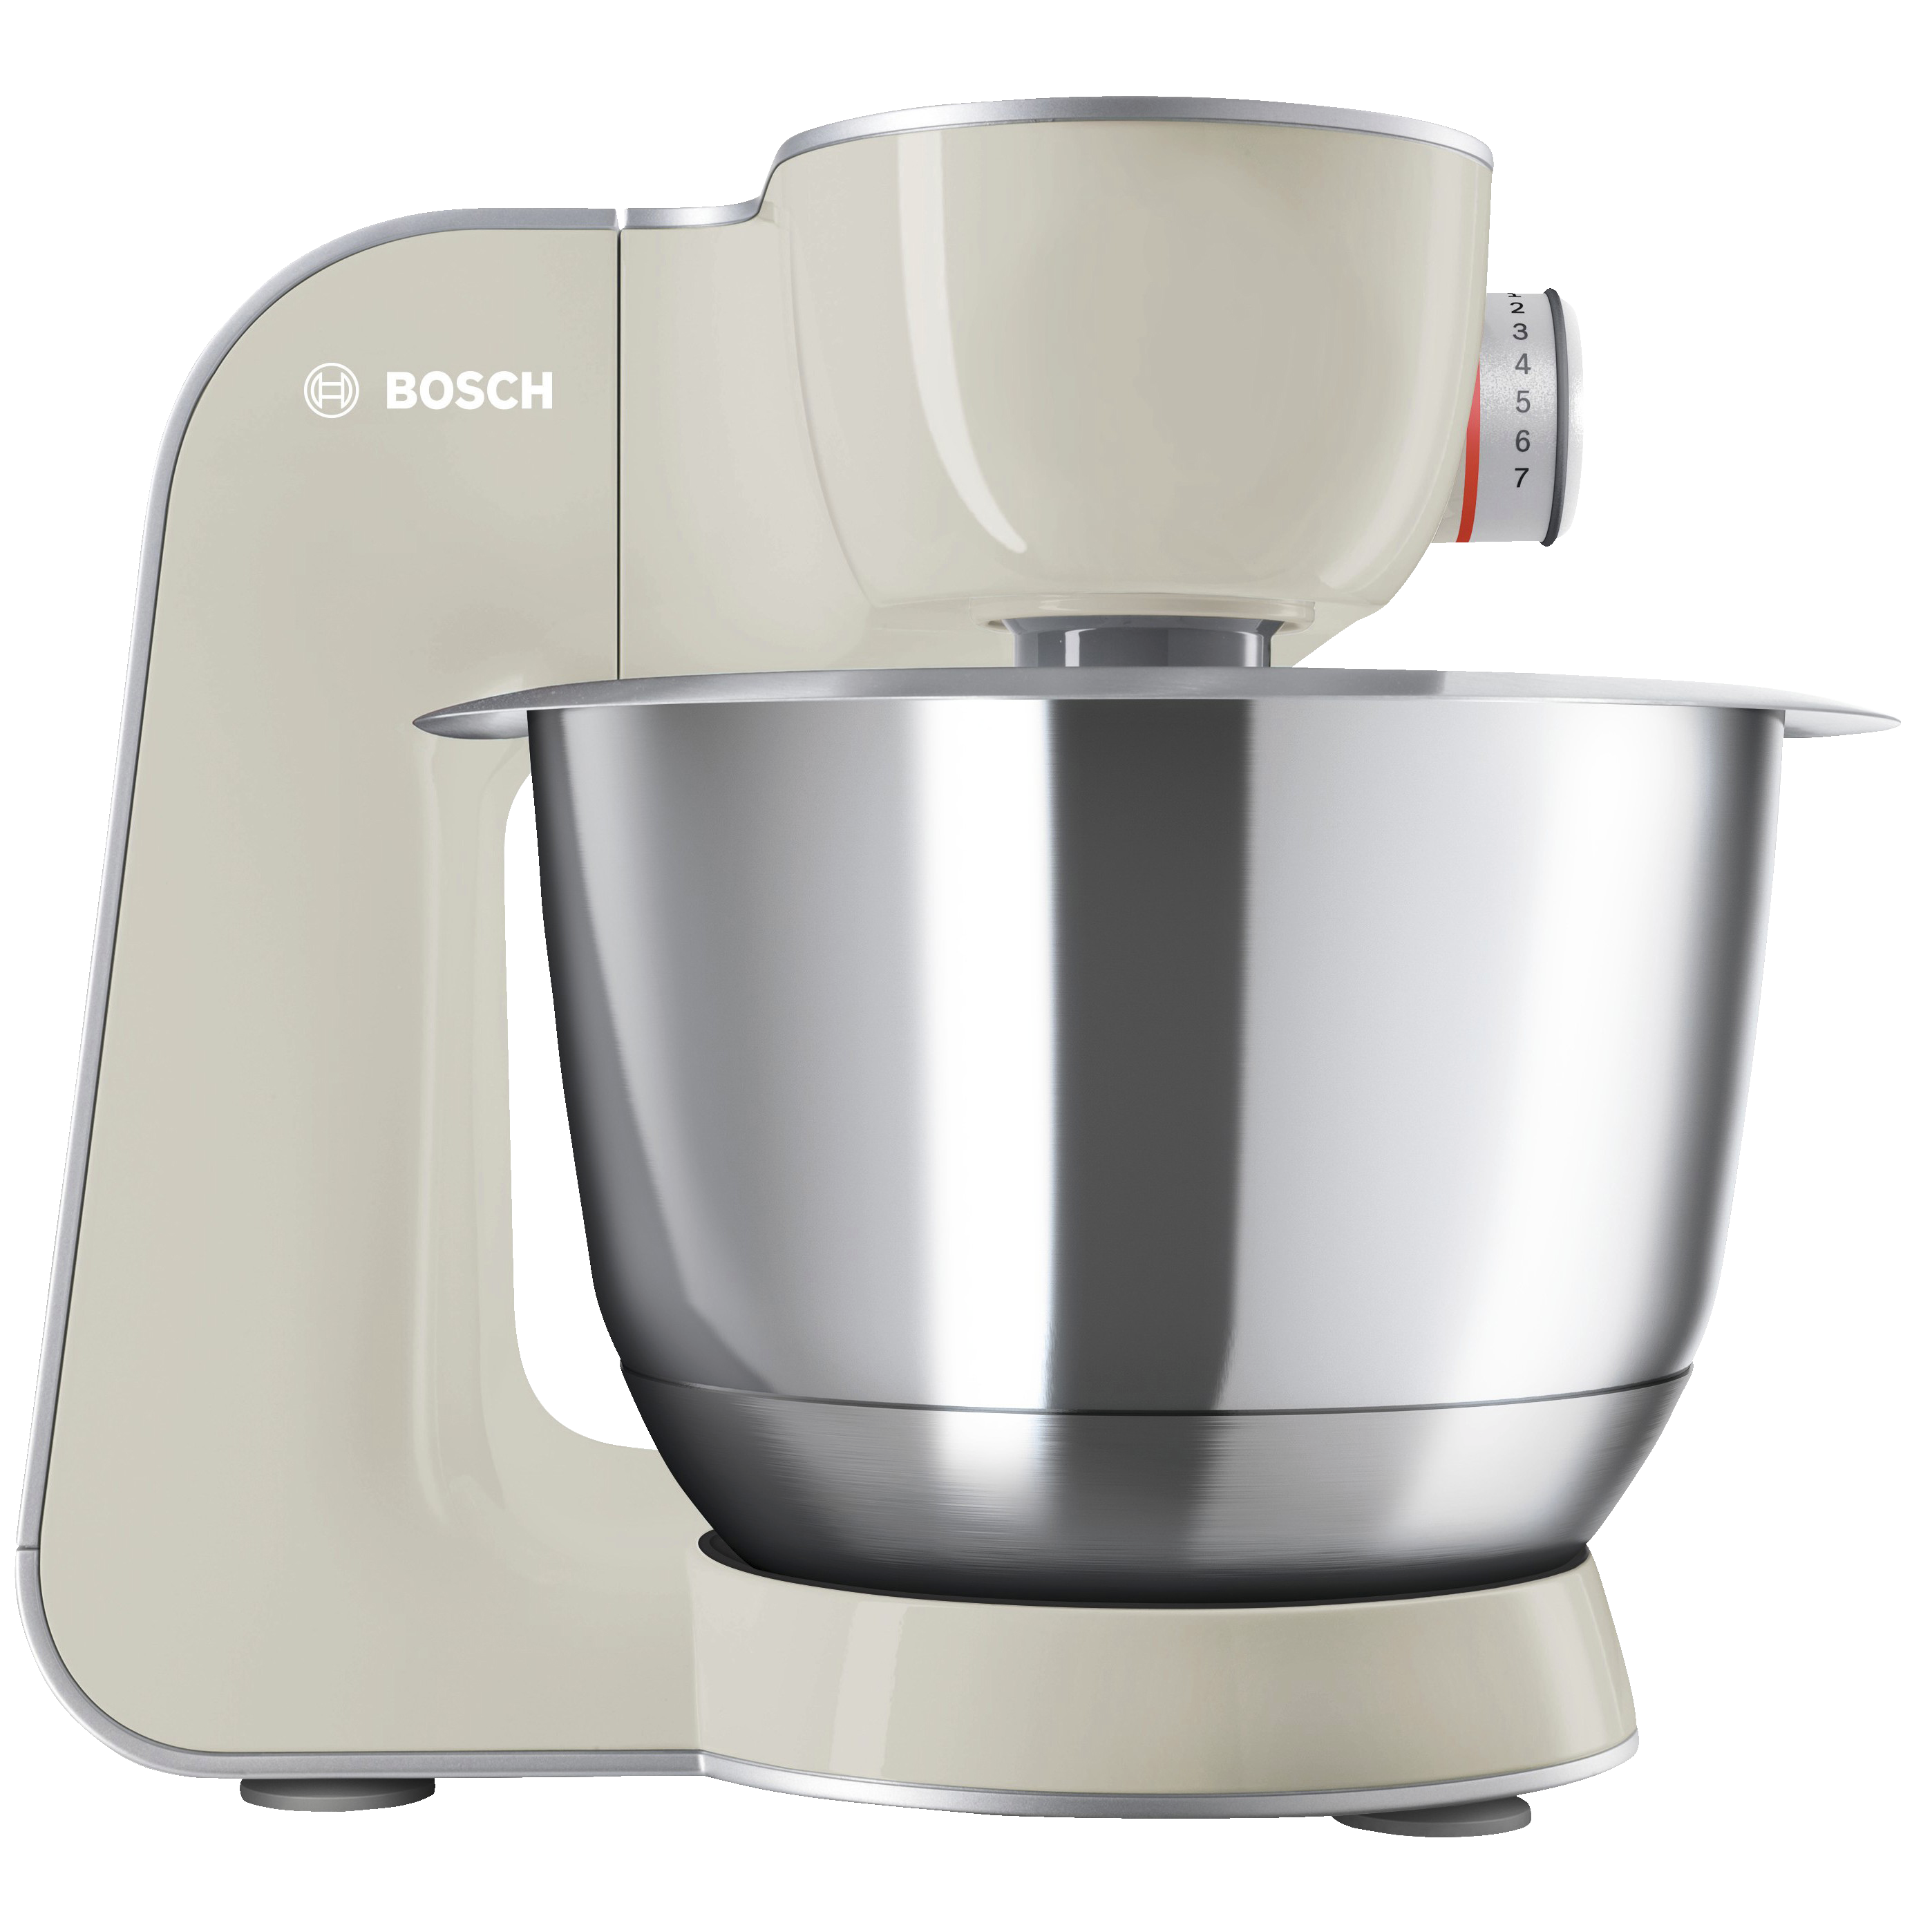 Bosch MUM5 CreationLine köksmaskin (grå/silver) - Köksapparater ...